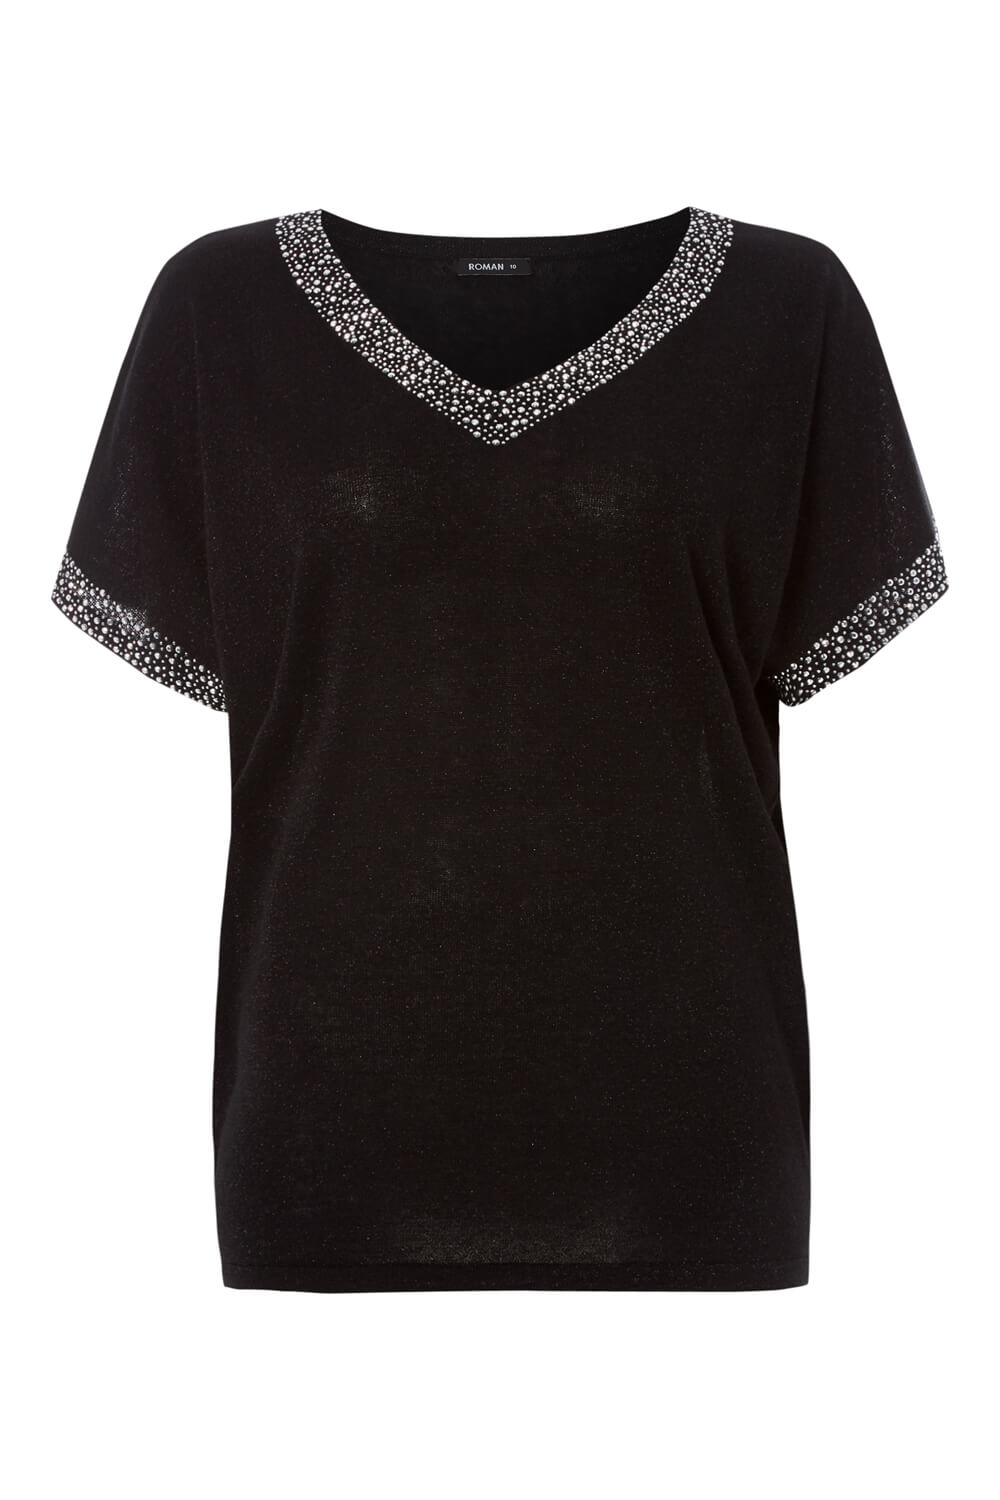 Black Sparkle Embellished Knit Top, Image 4 of 4